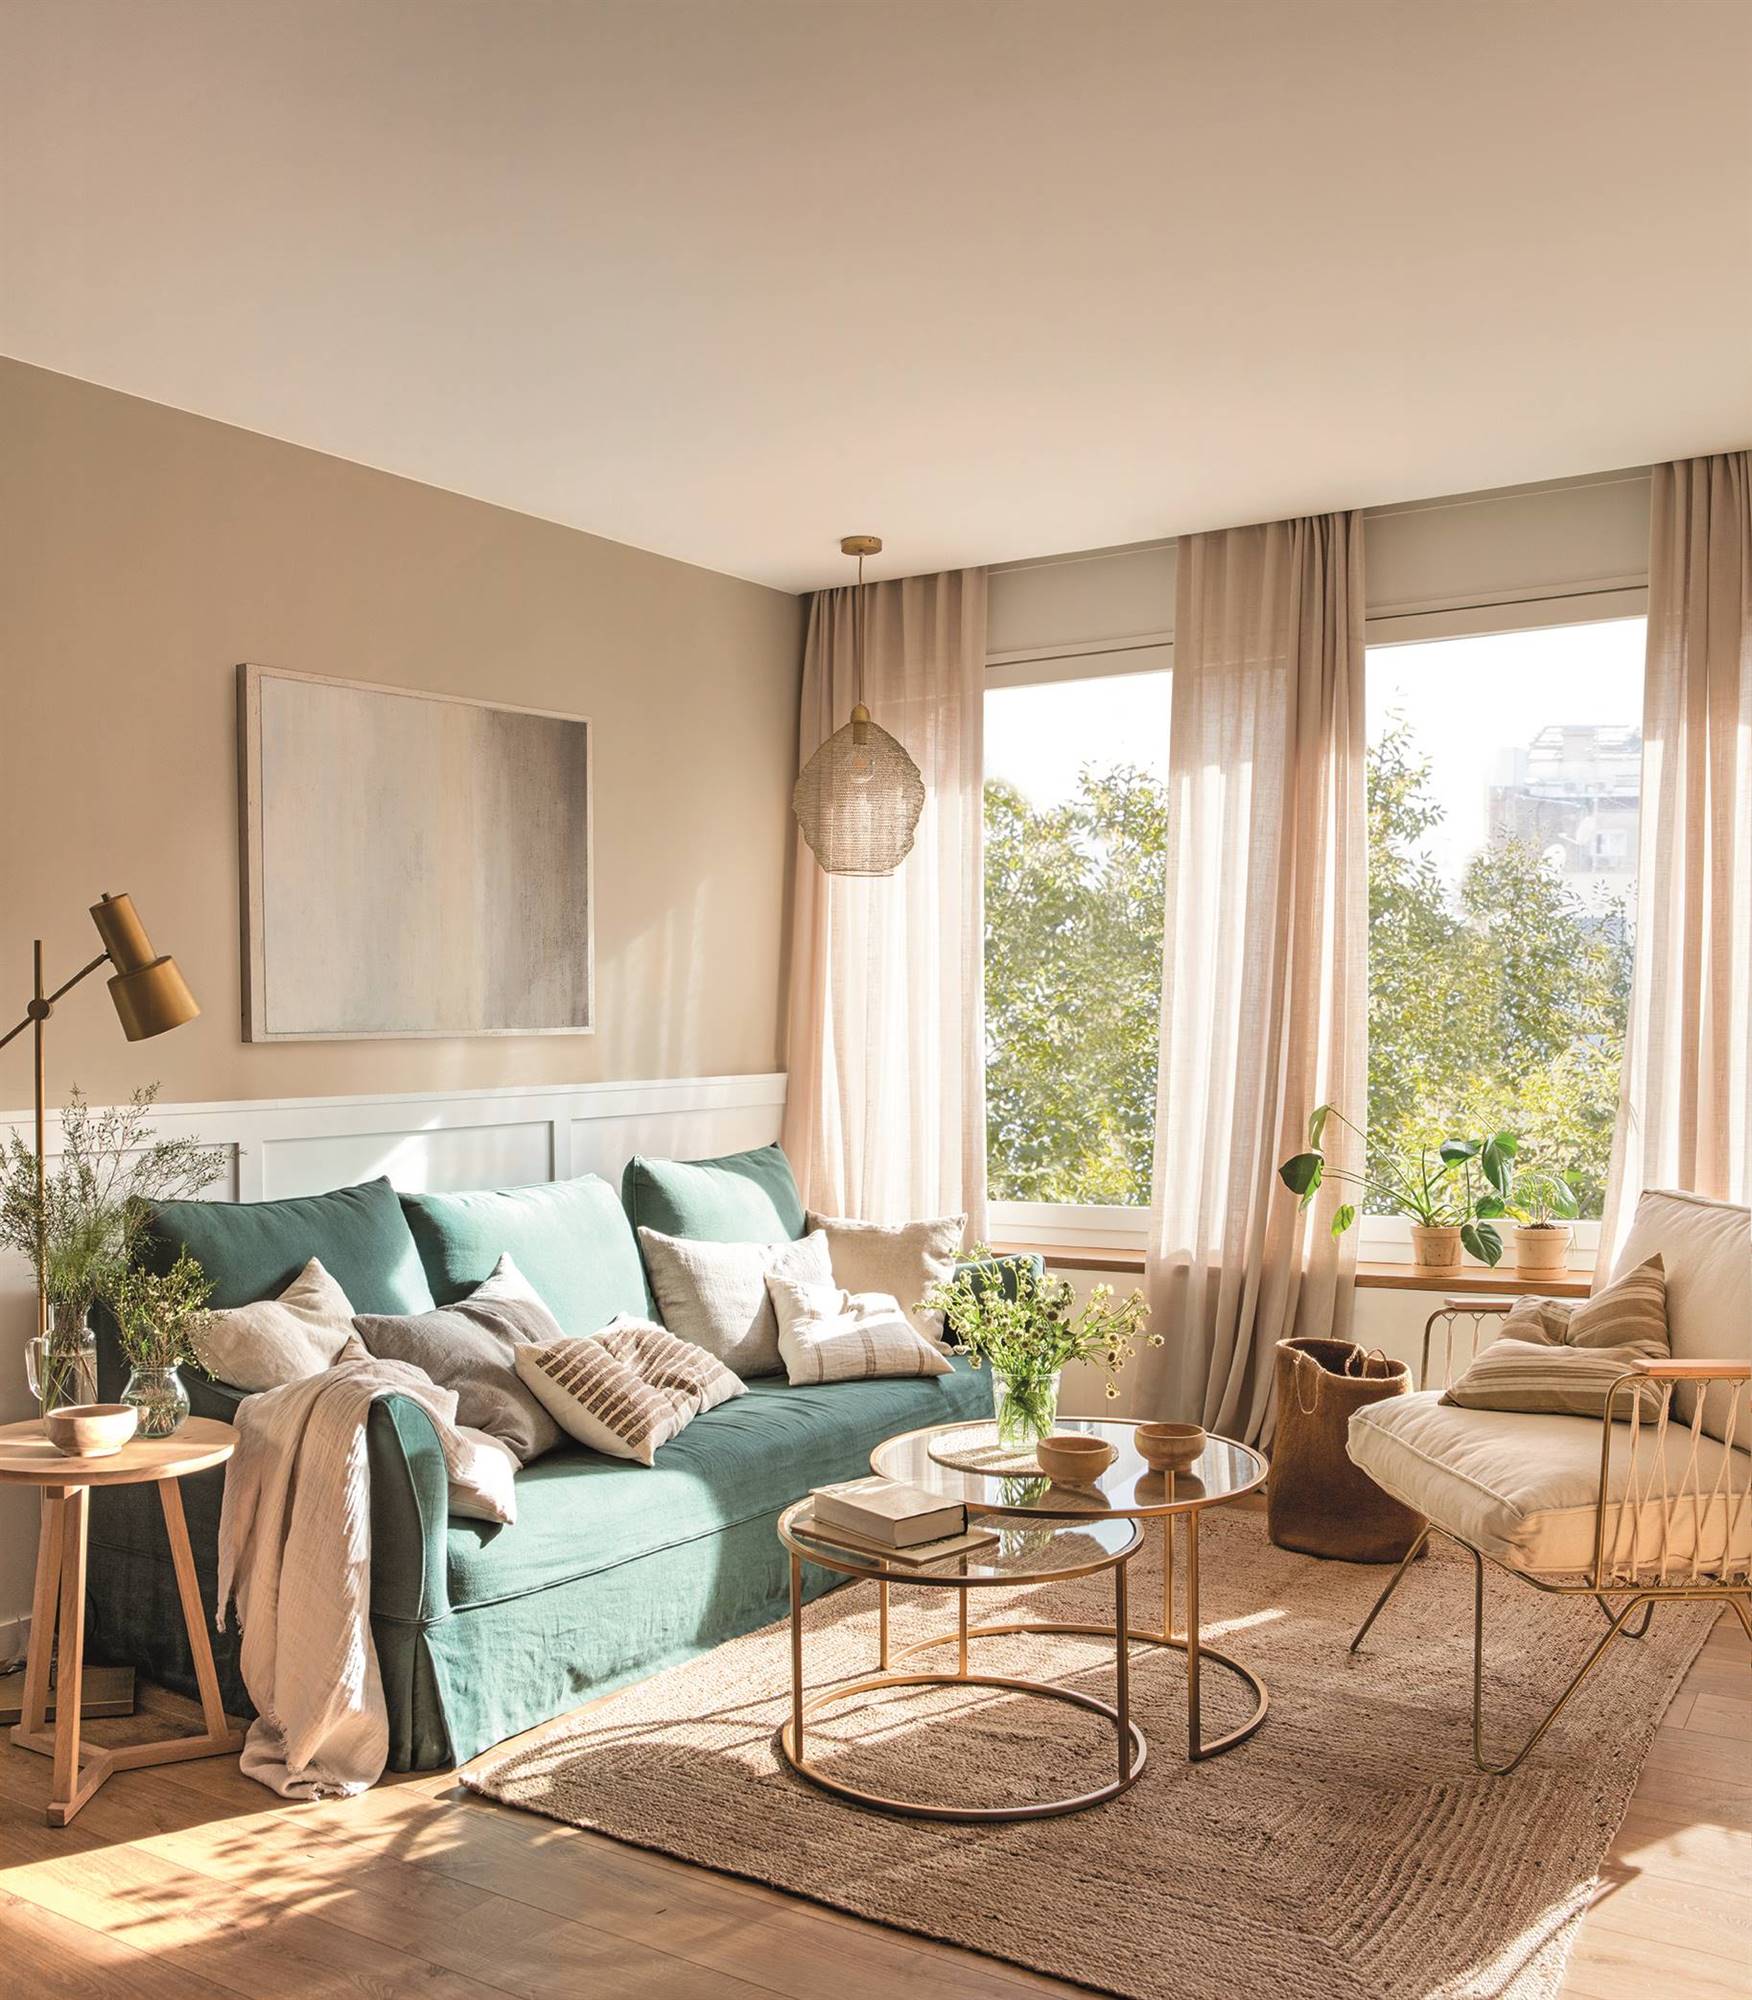 Salón con sofá de lino verde, mesas nido de latón y cristal, mesa auxiliar de madera y butaca con estructura dorada 23-27